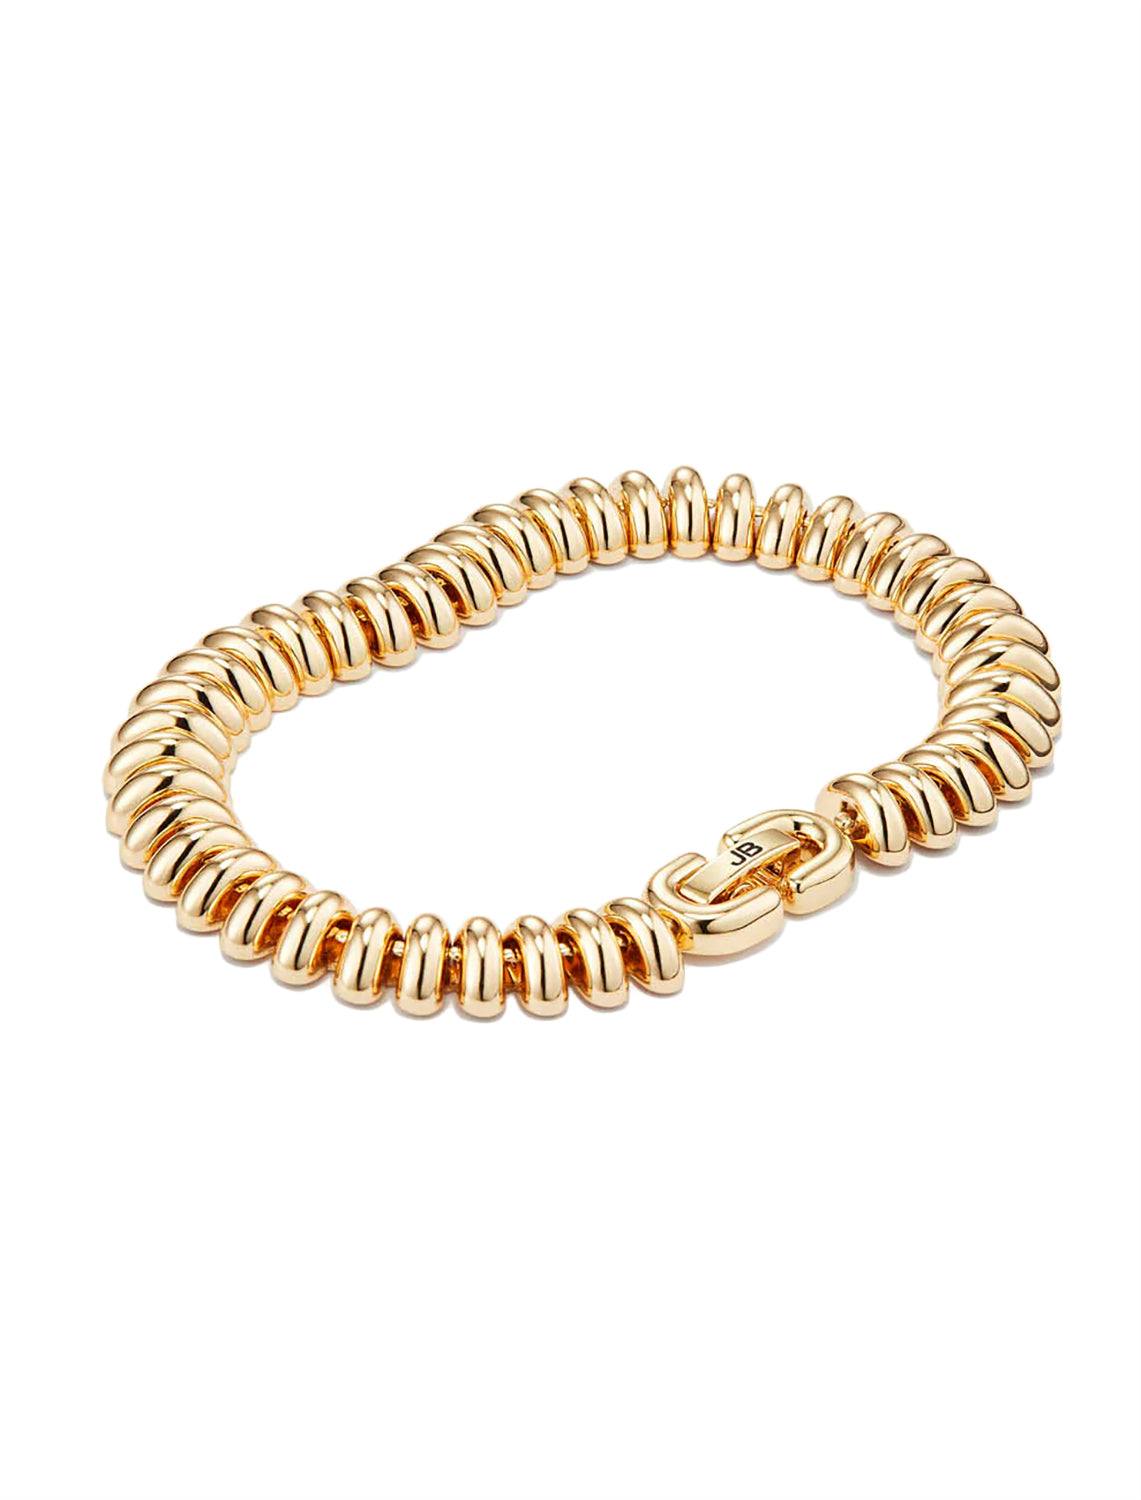 sofia bracelet in gold